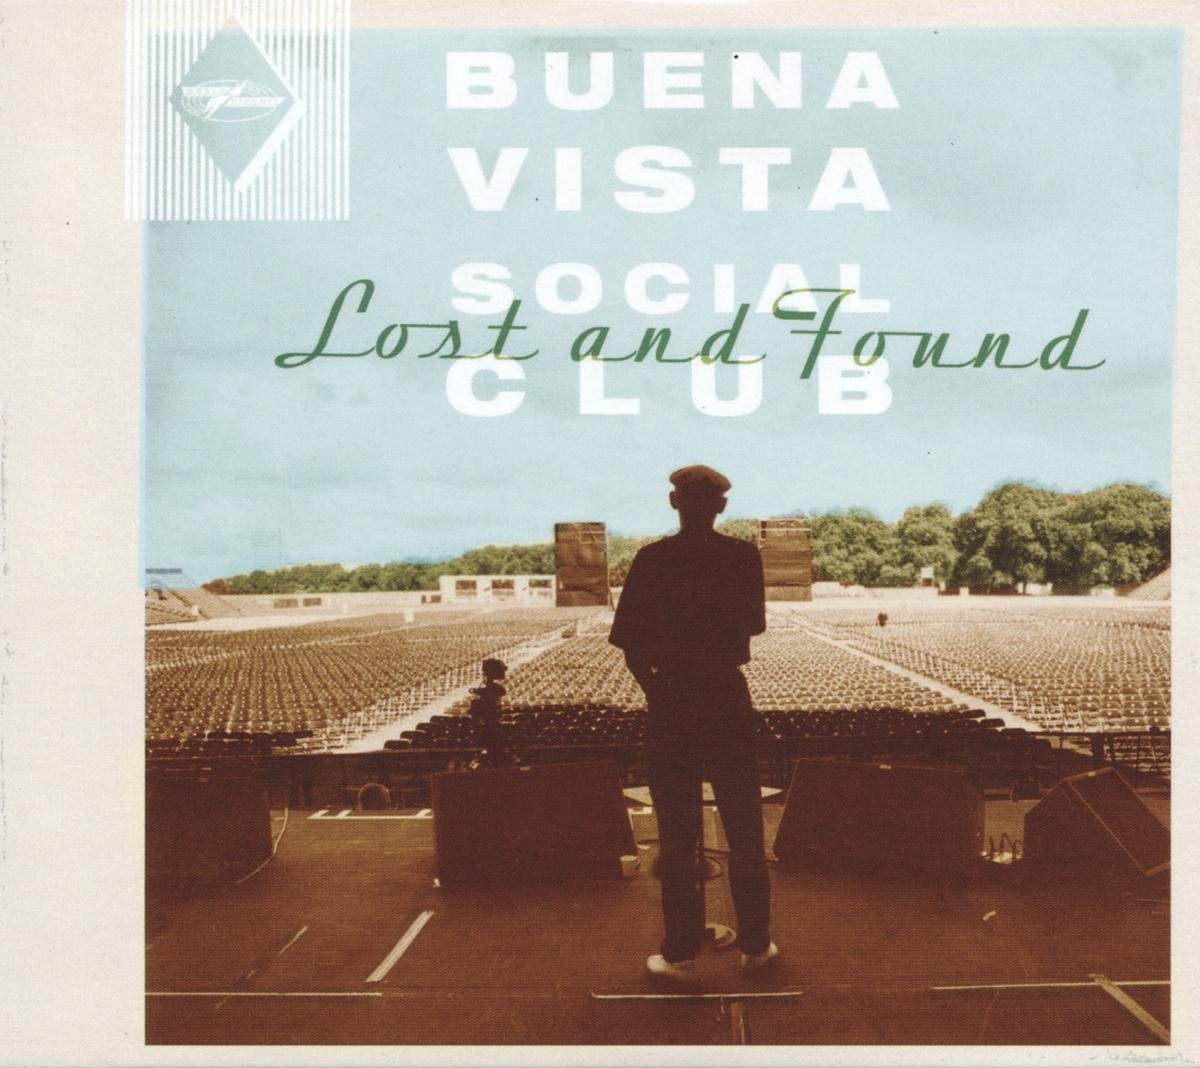 Buena Vista Social Club - Lost And Found - Buena Vista Social Club